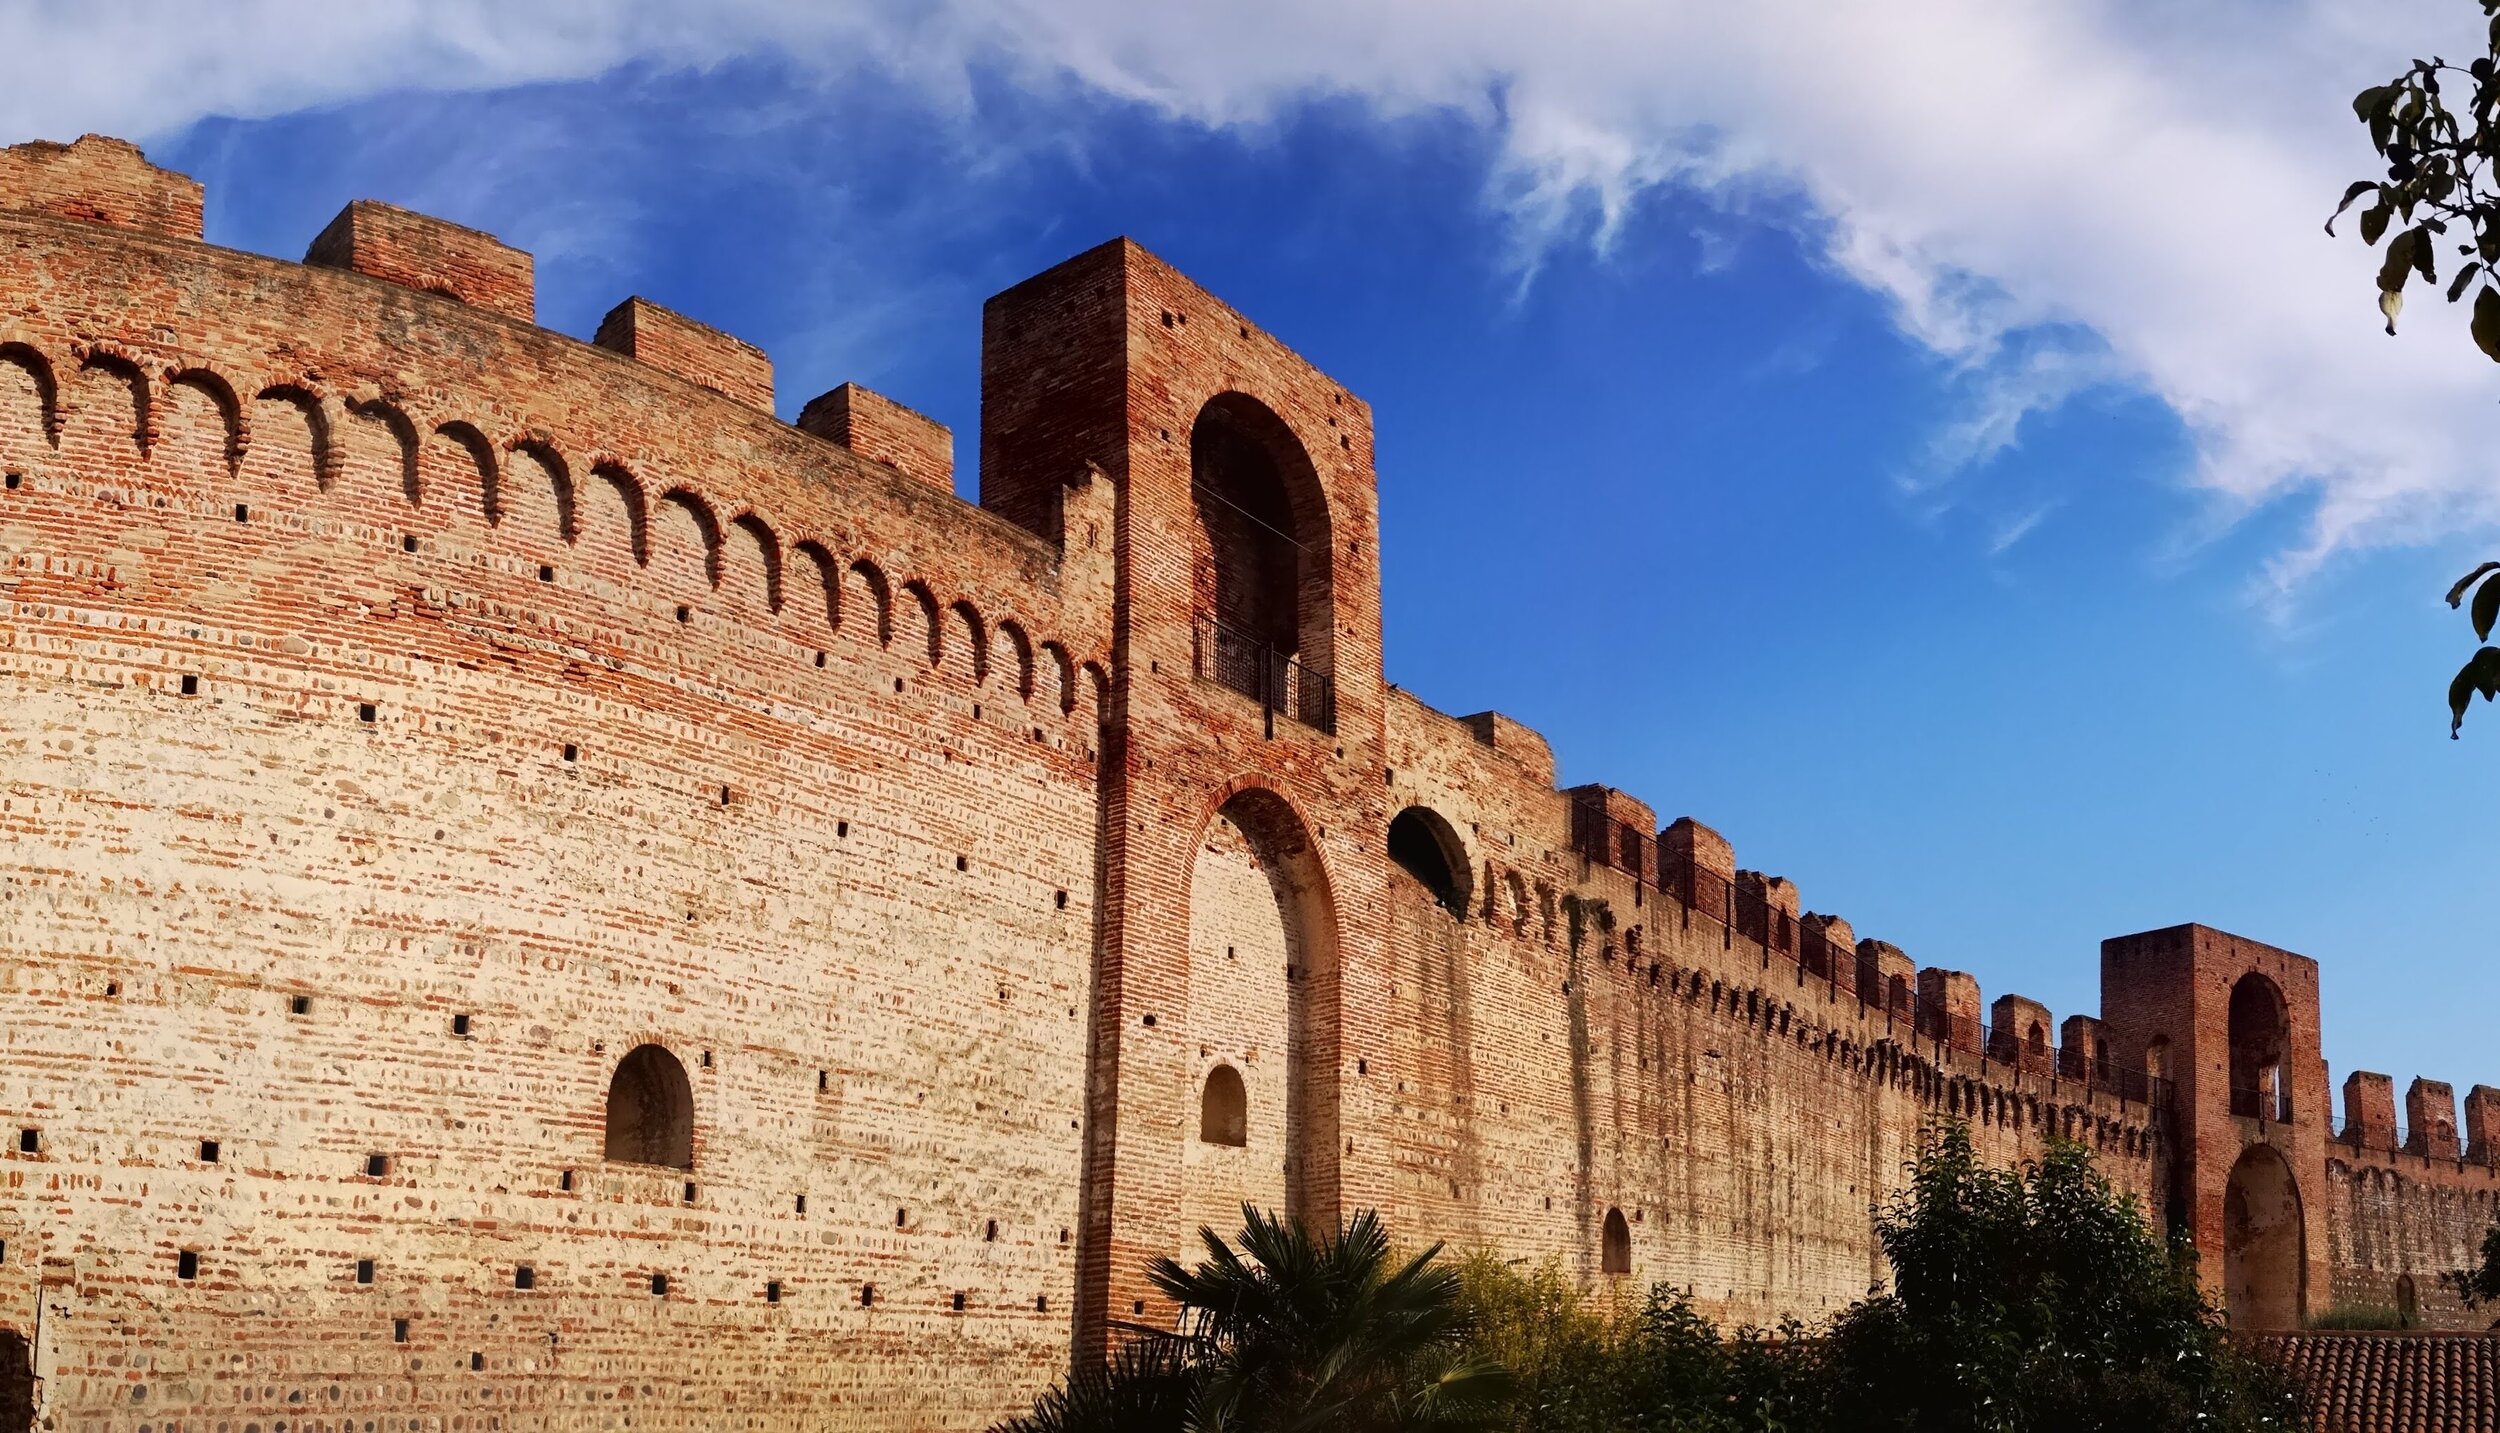 Cittadella walls pano 1.jpeg